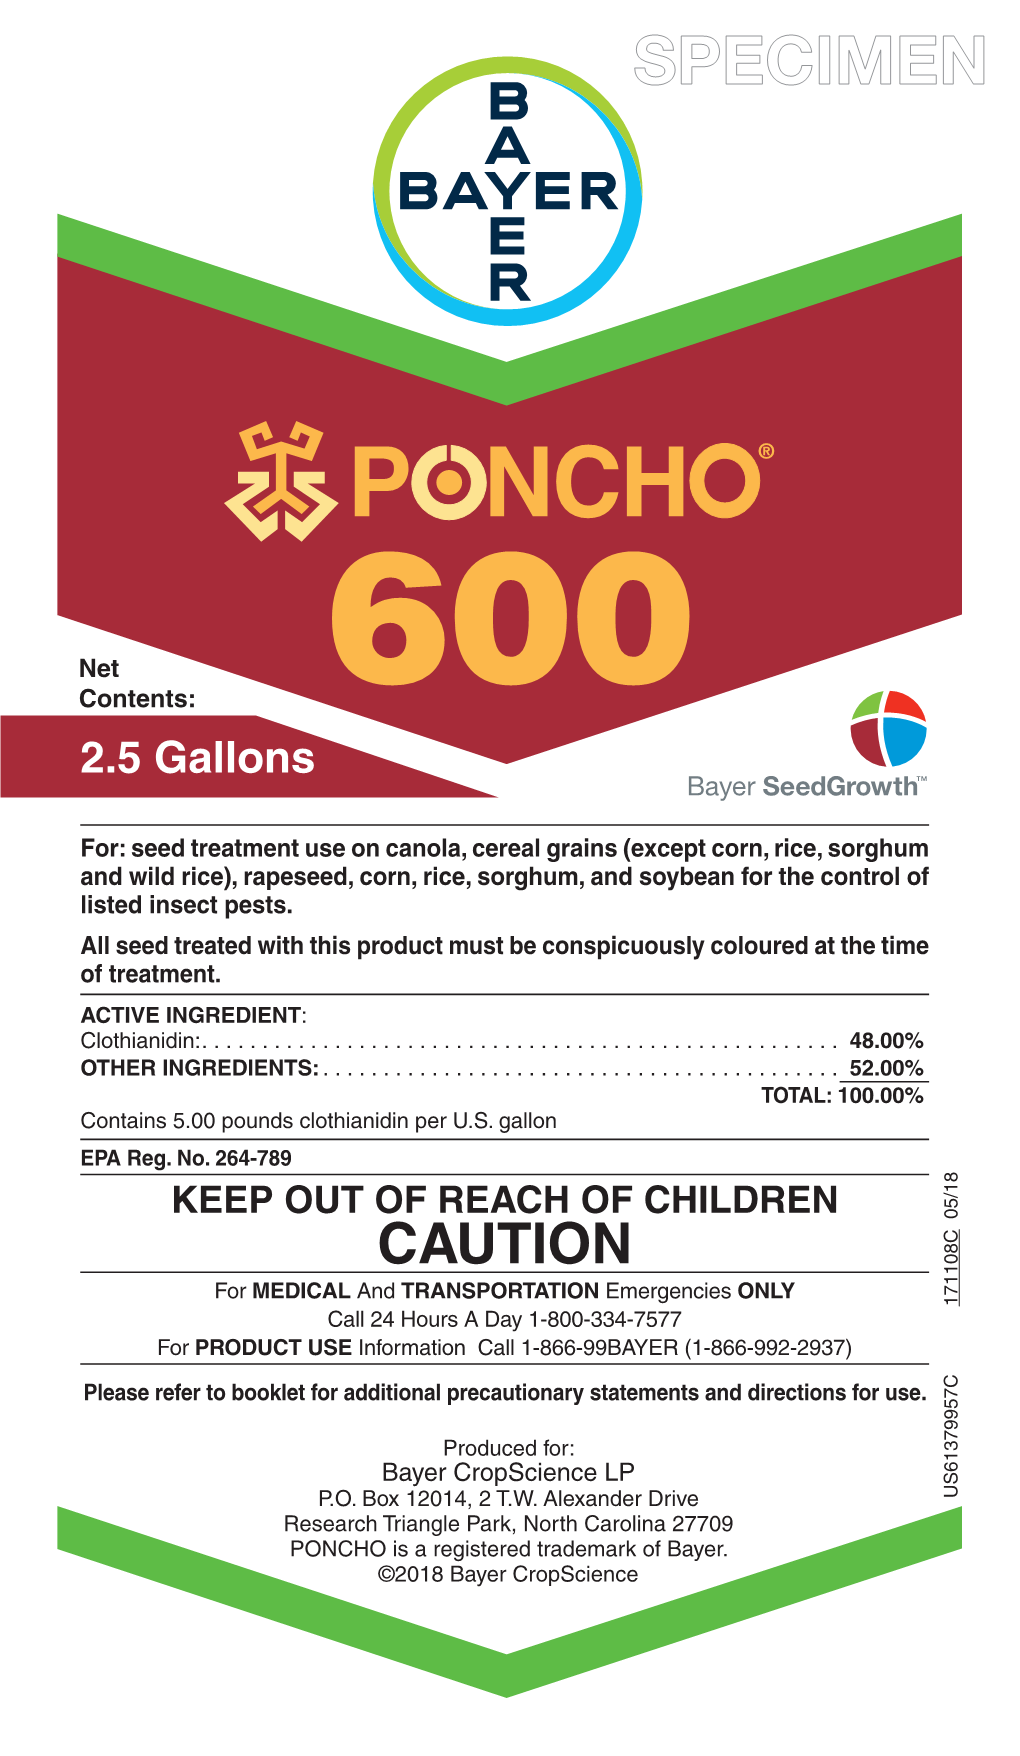 Poncho 600 2.5 Gallon Etl Cmyk 5/7/18